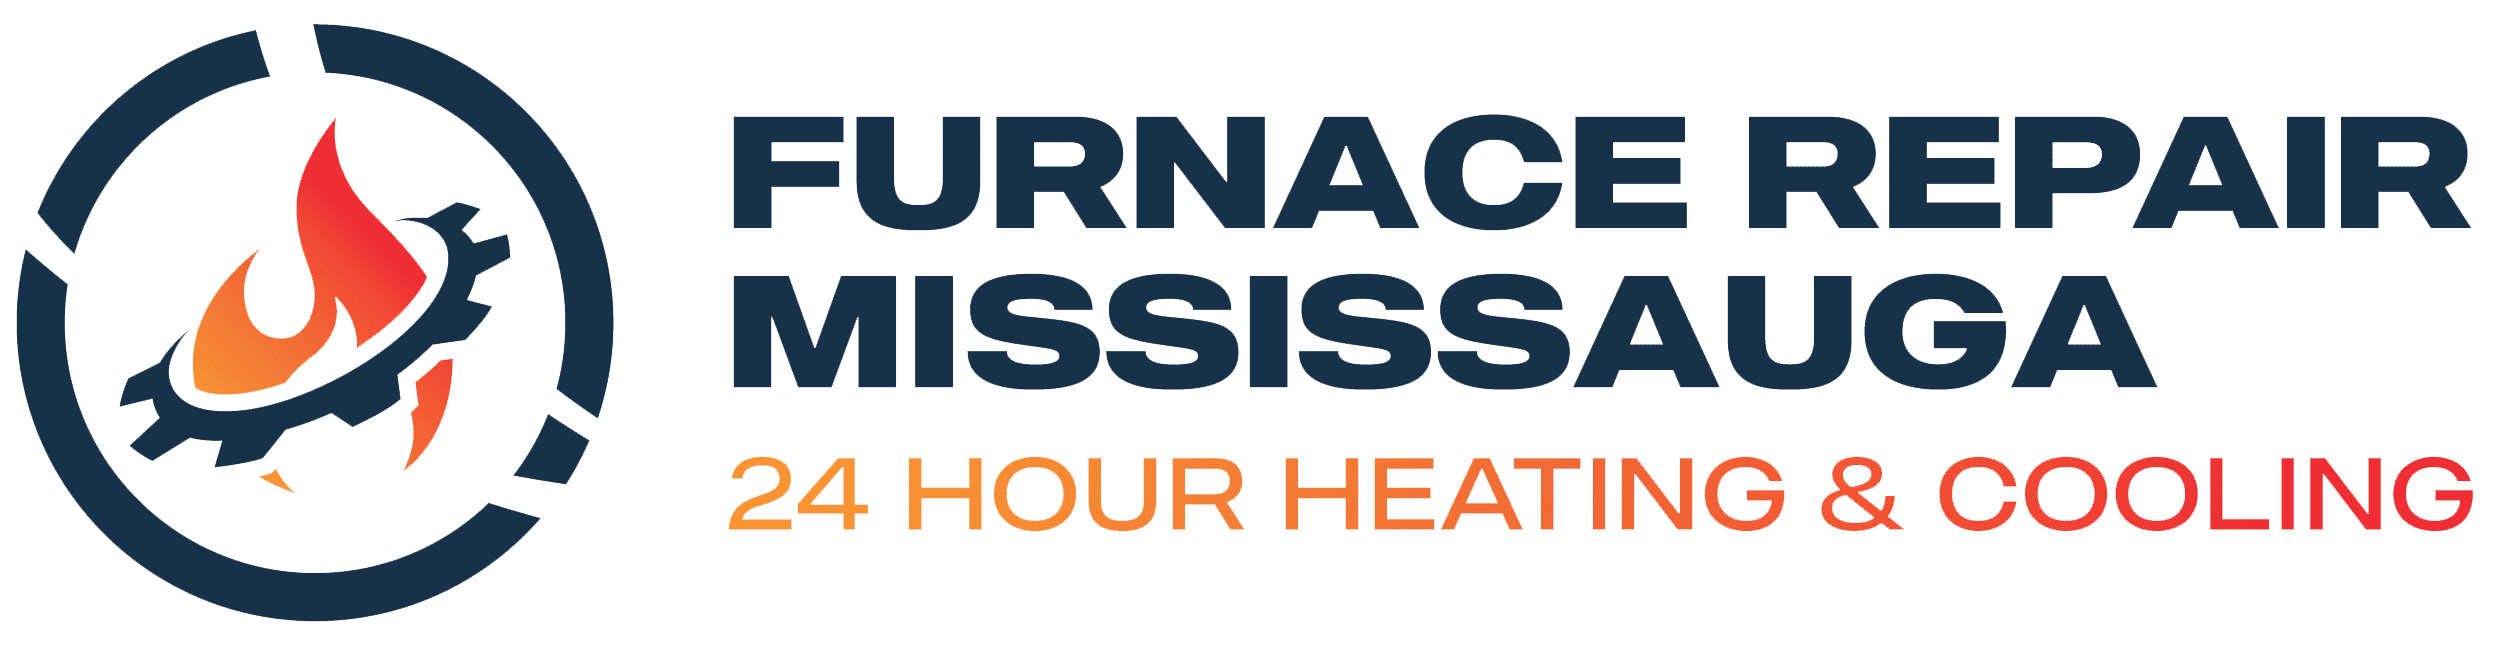 Furnace Repair Mississauga - Logo